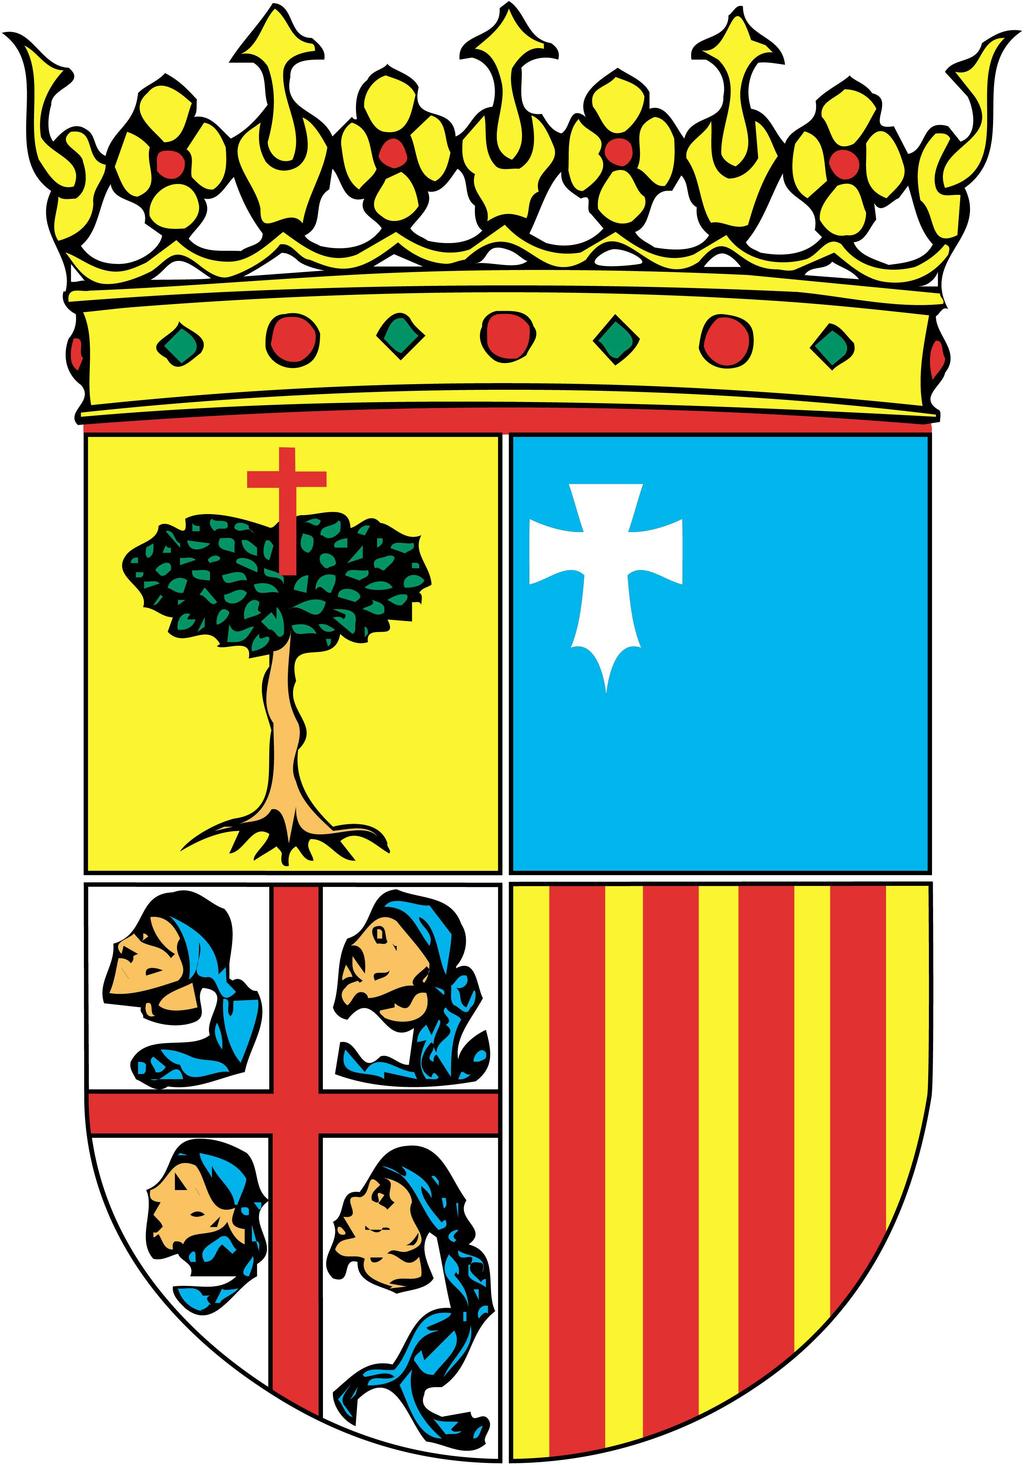 RE 031/2015 Acuerdo 42/2015, de 31 de marzo de 2015, del Tribunal Administrativo de Contratos Públicos de Aragón, por el que se resuelve el recurso especial, interpuesto por COANFI, S.L.